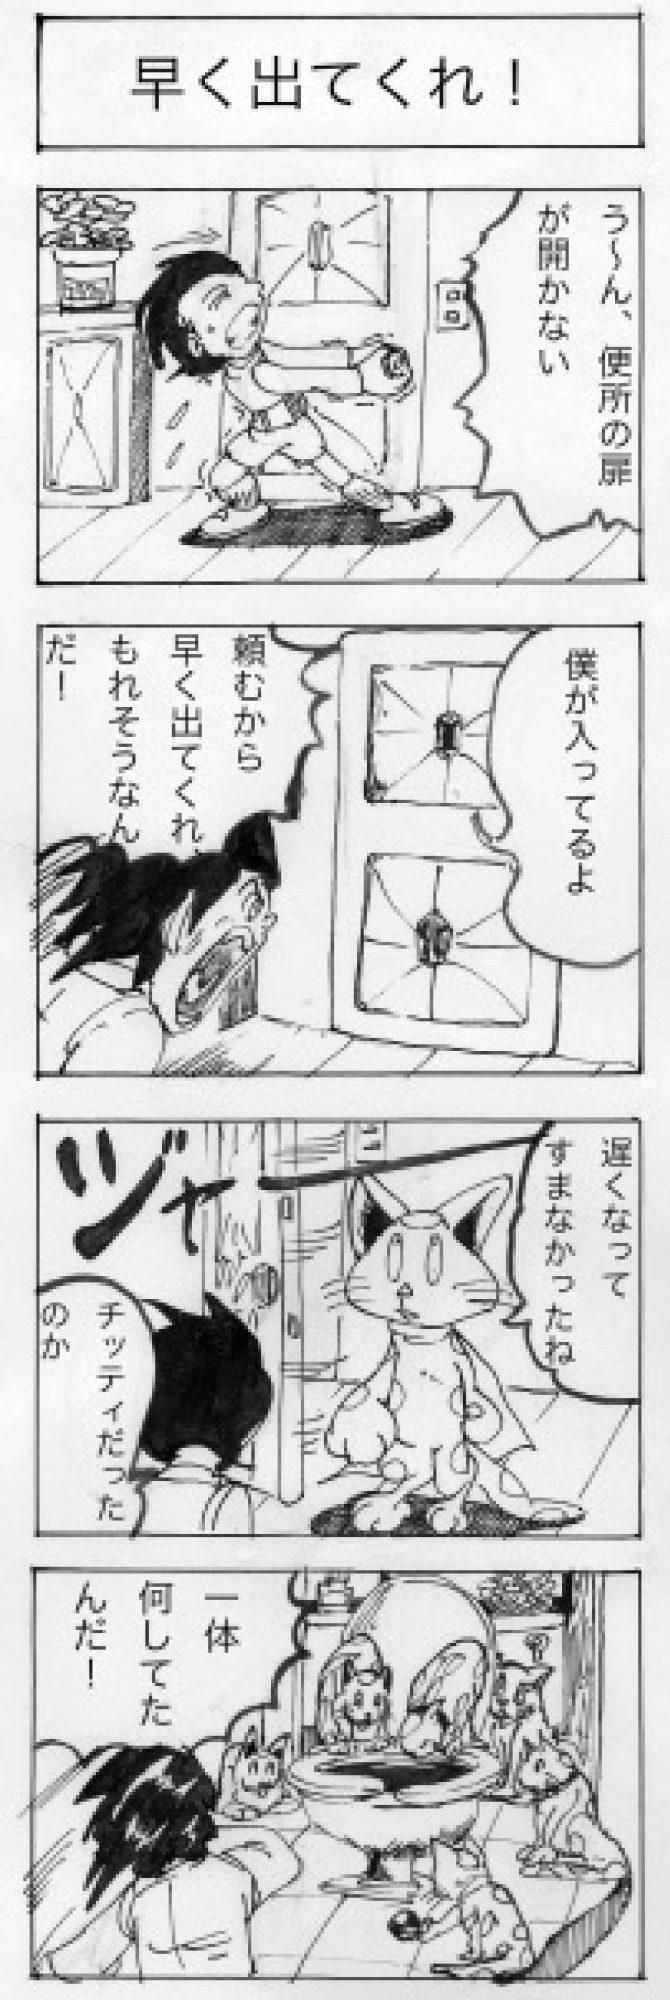 四コマ漫画劇場003